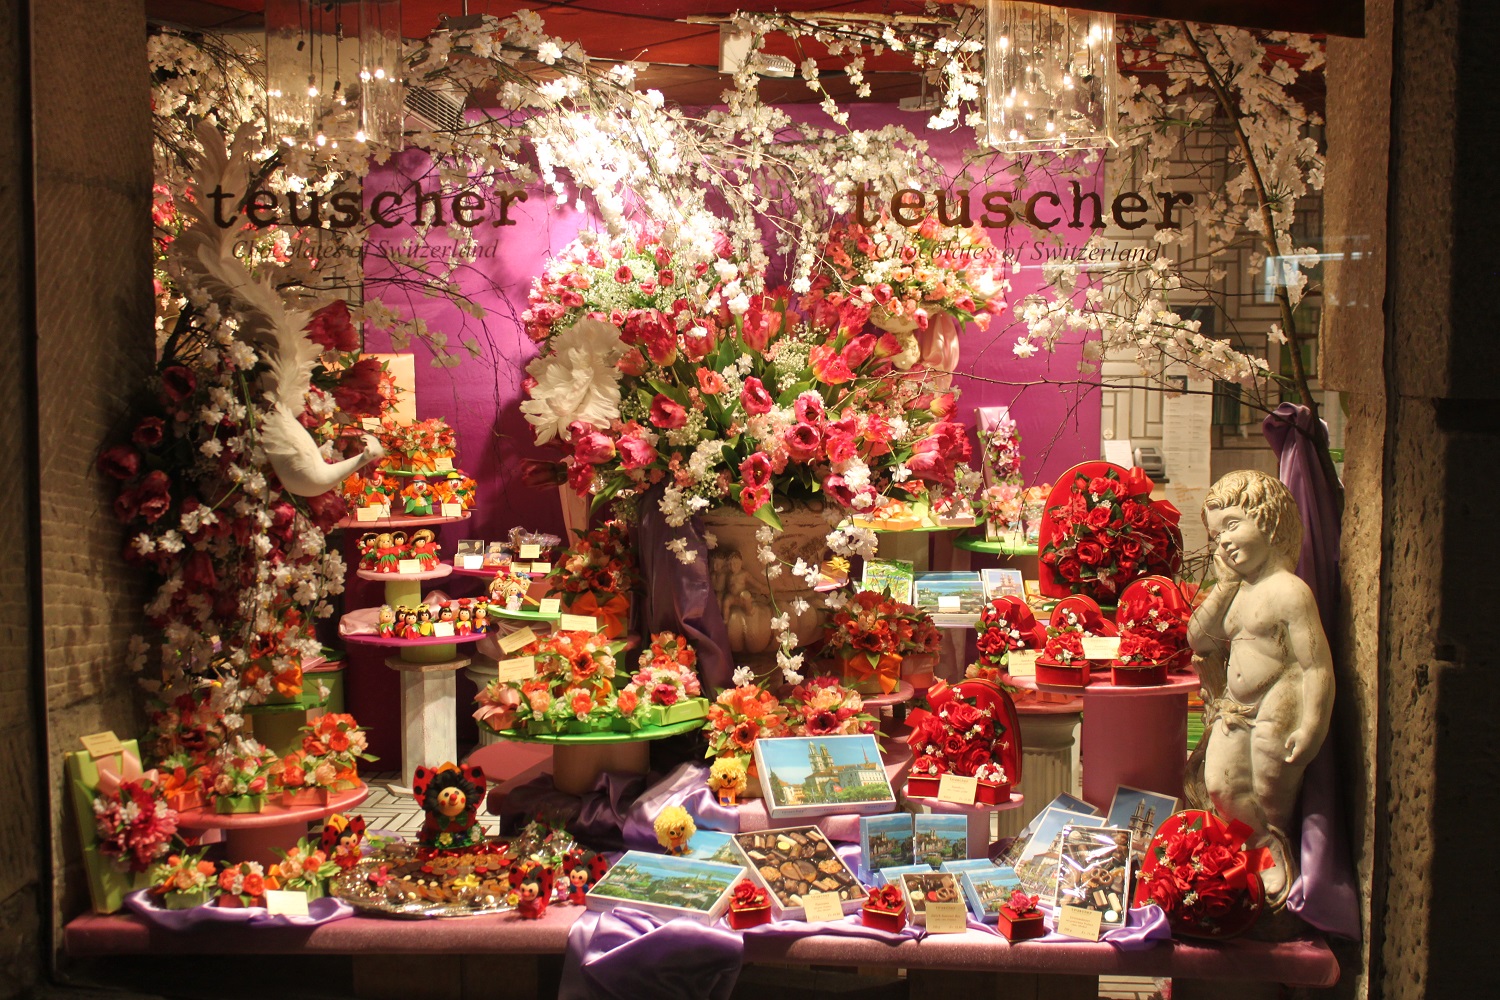 Teuscher Chocolates, Zurich